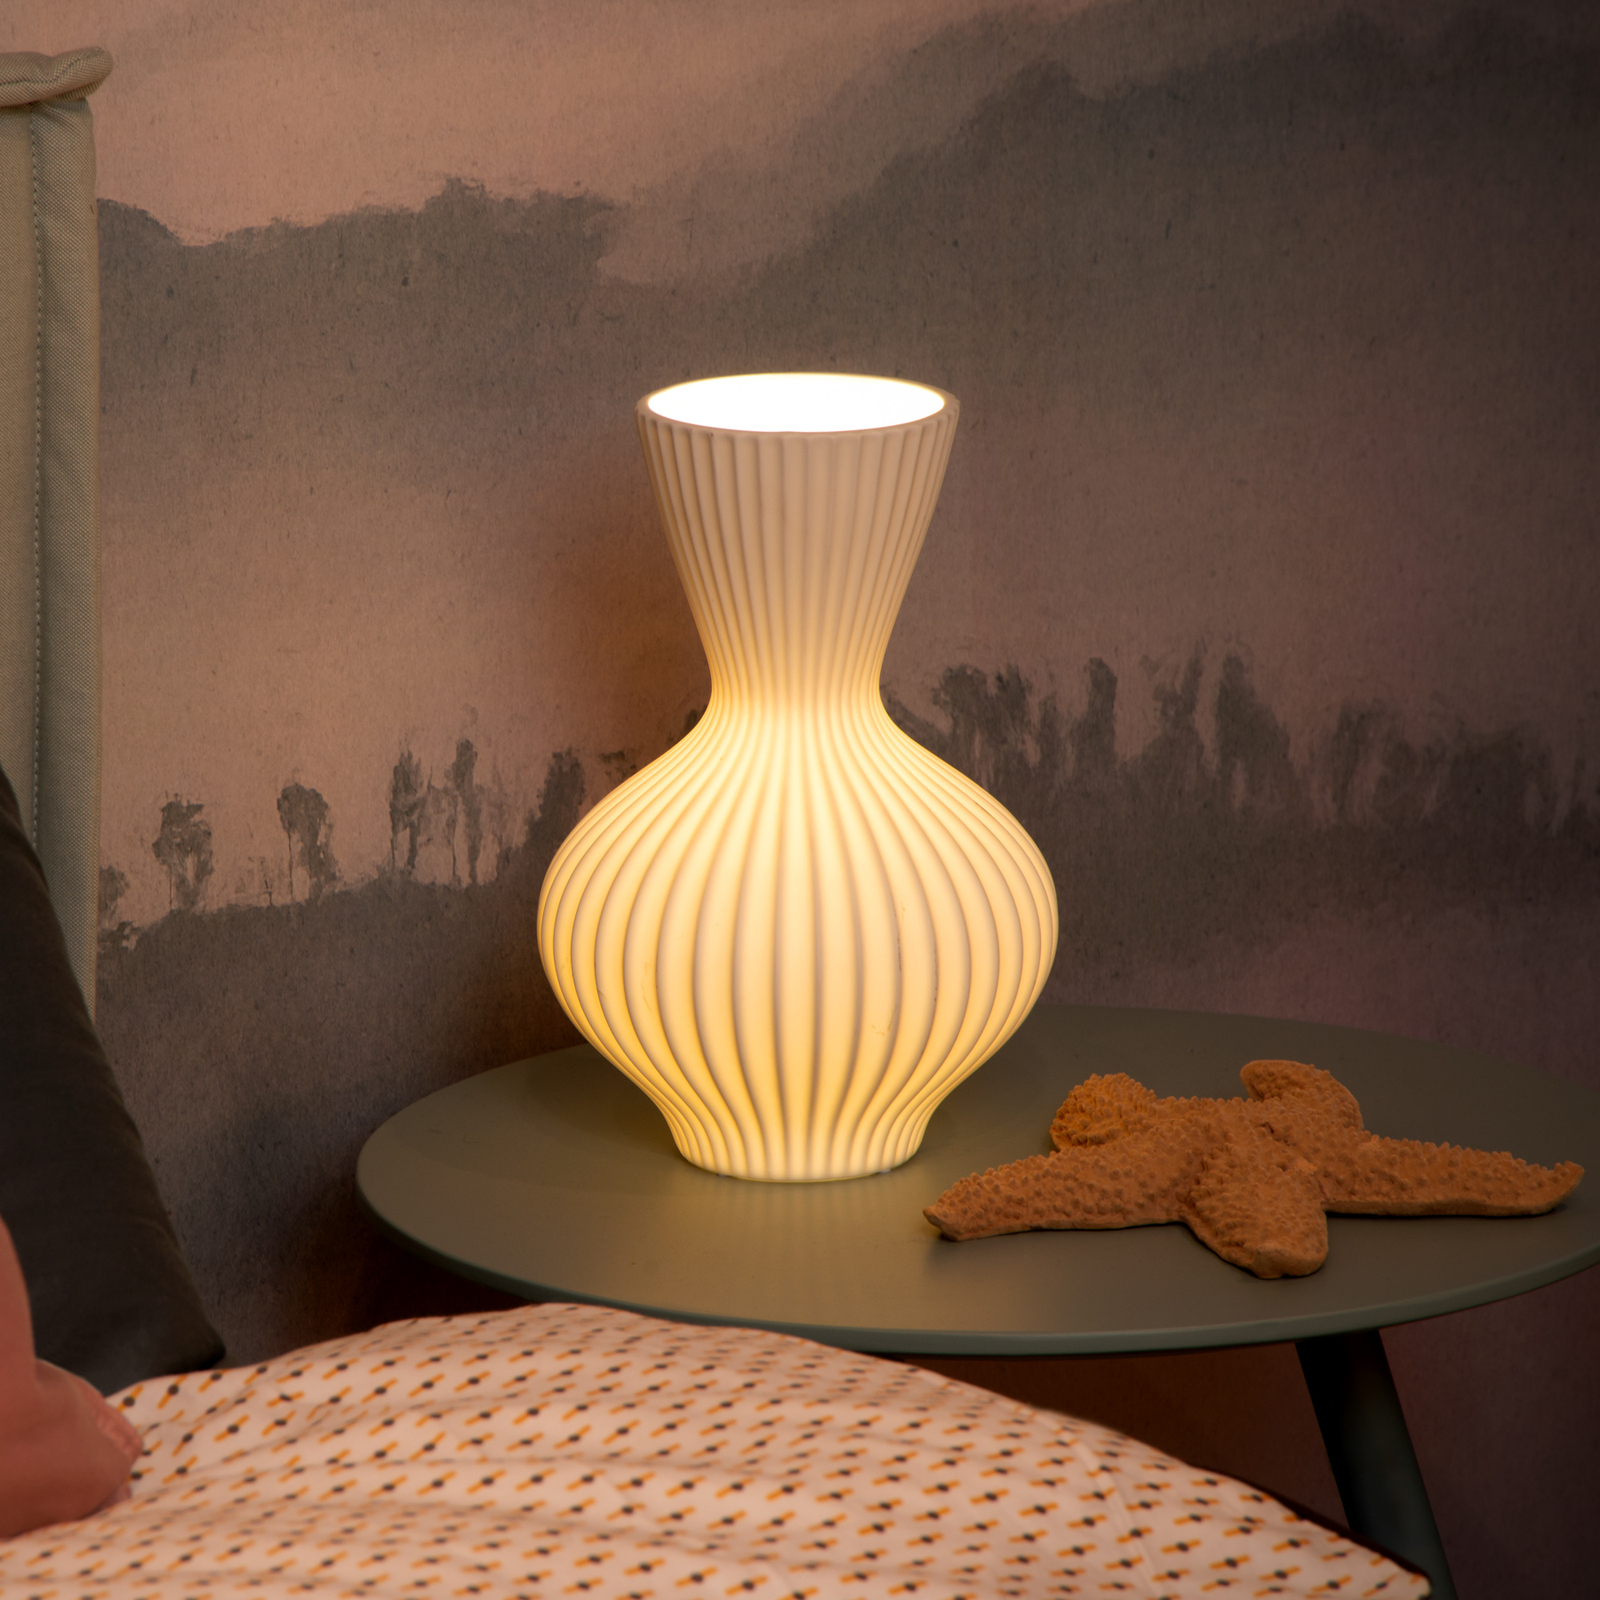 Momoro porcelain table lamp, 30 cm